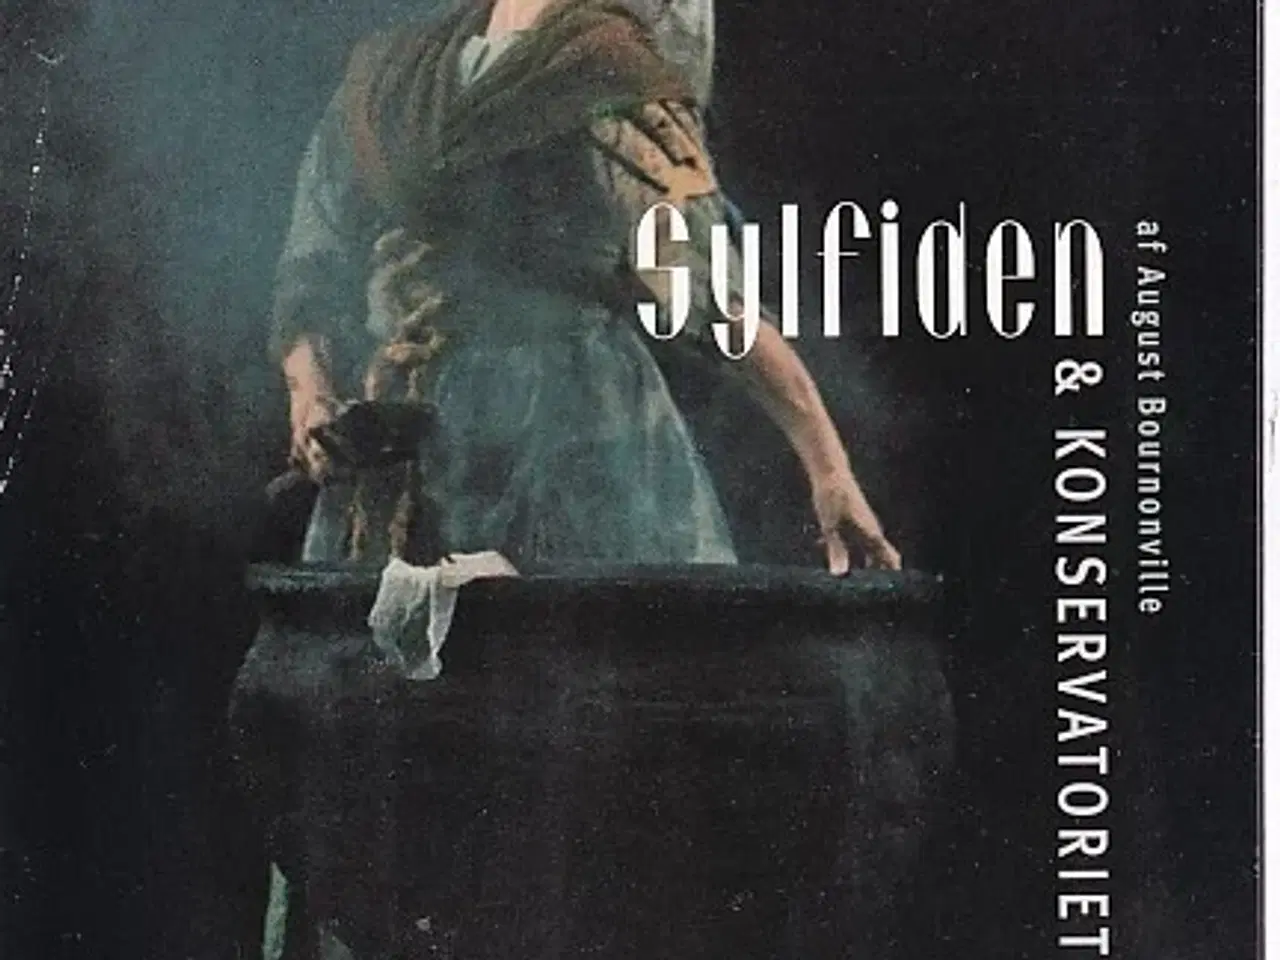 Billede 1 - Sylfiden - Ballet 2000 - Det Kongelige Teater - Program A5 - Pæn